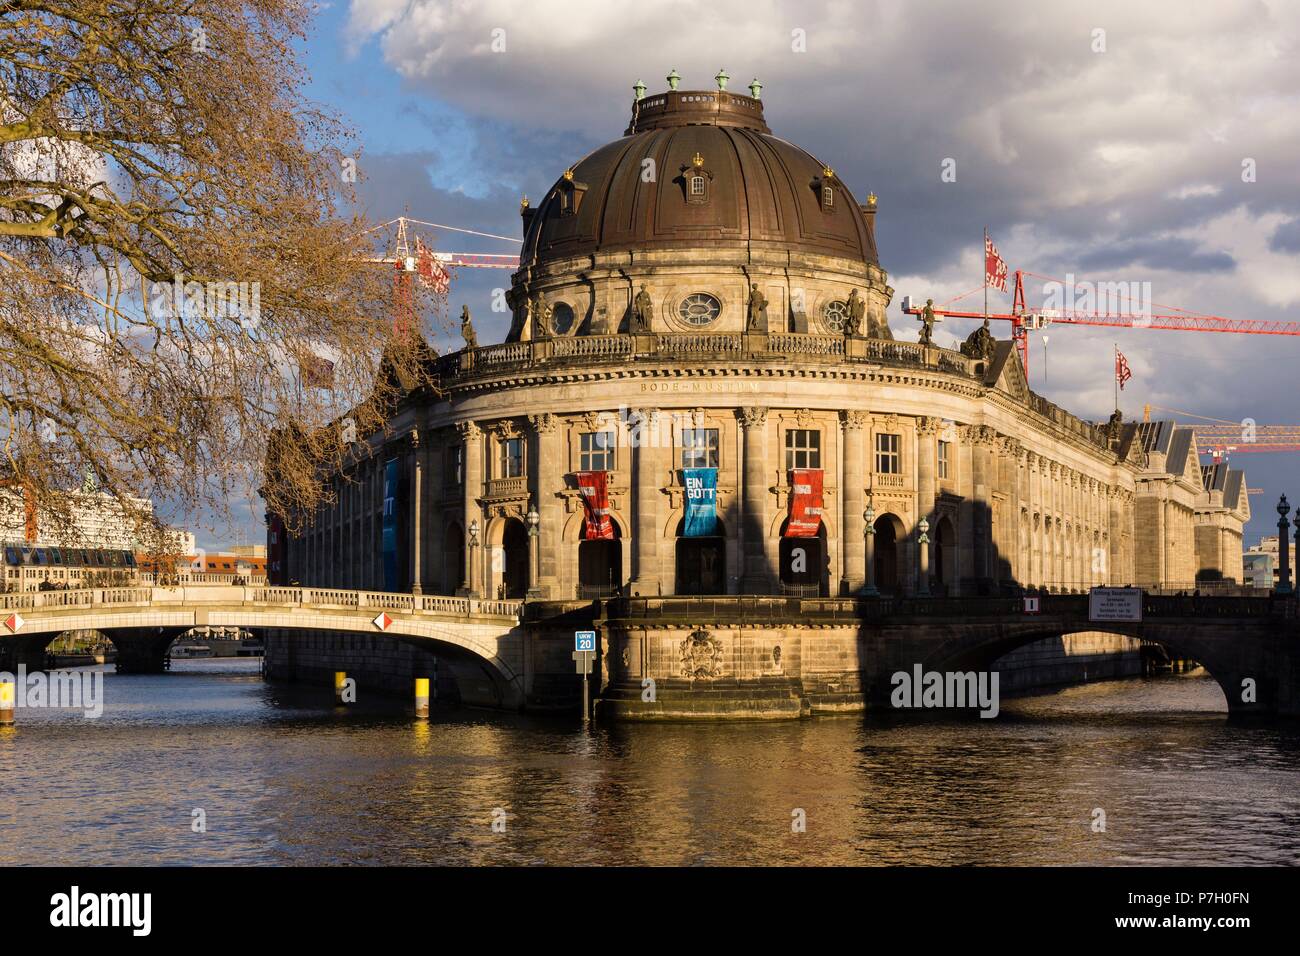 Museo Bode y puente sobre el rio Spree, isla de los museos, Berlin, Alemania, europe. Stock Photo